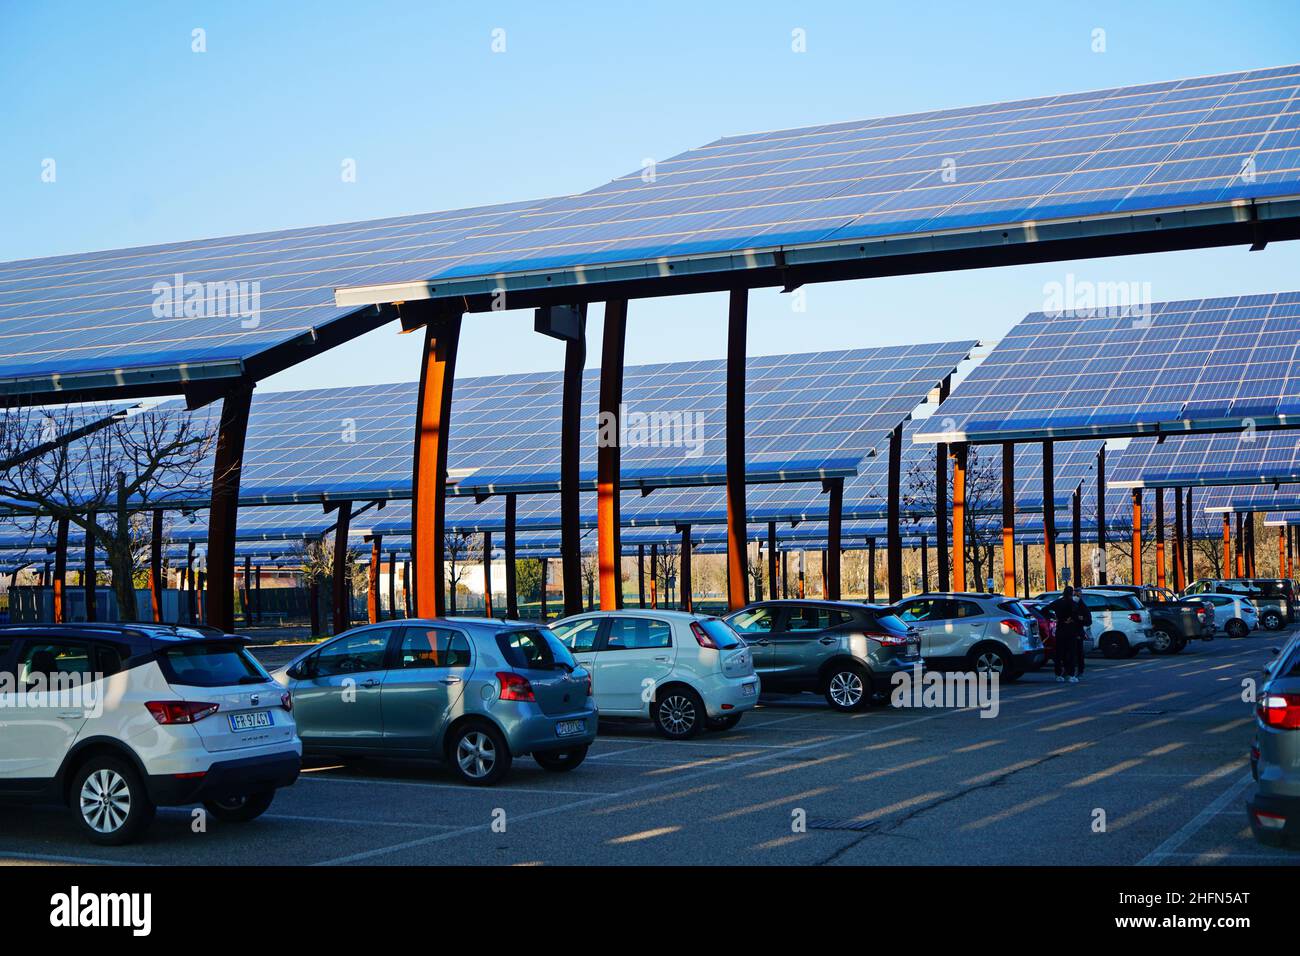 Sonnenkollektoren auf einem Parkplatz. Unternehmen installieren erneuerbare Energiequellen, um ihre CO2-Bilanz zu reduzieren. Padua, Italien - Januar 2022 Stockfoto